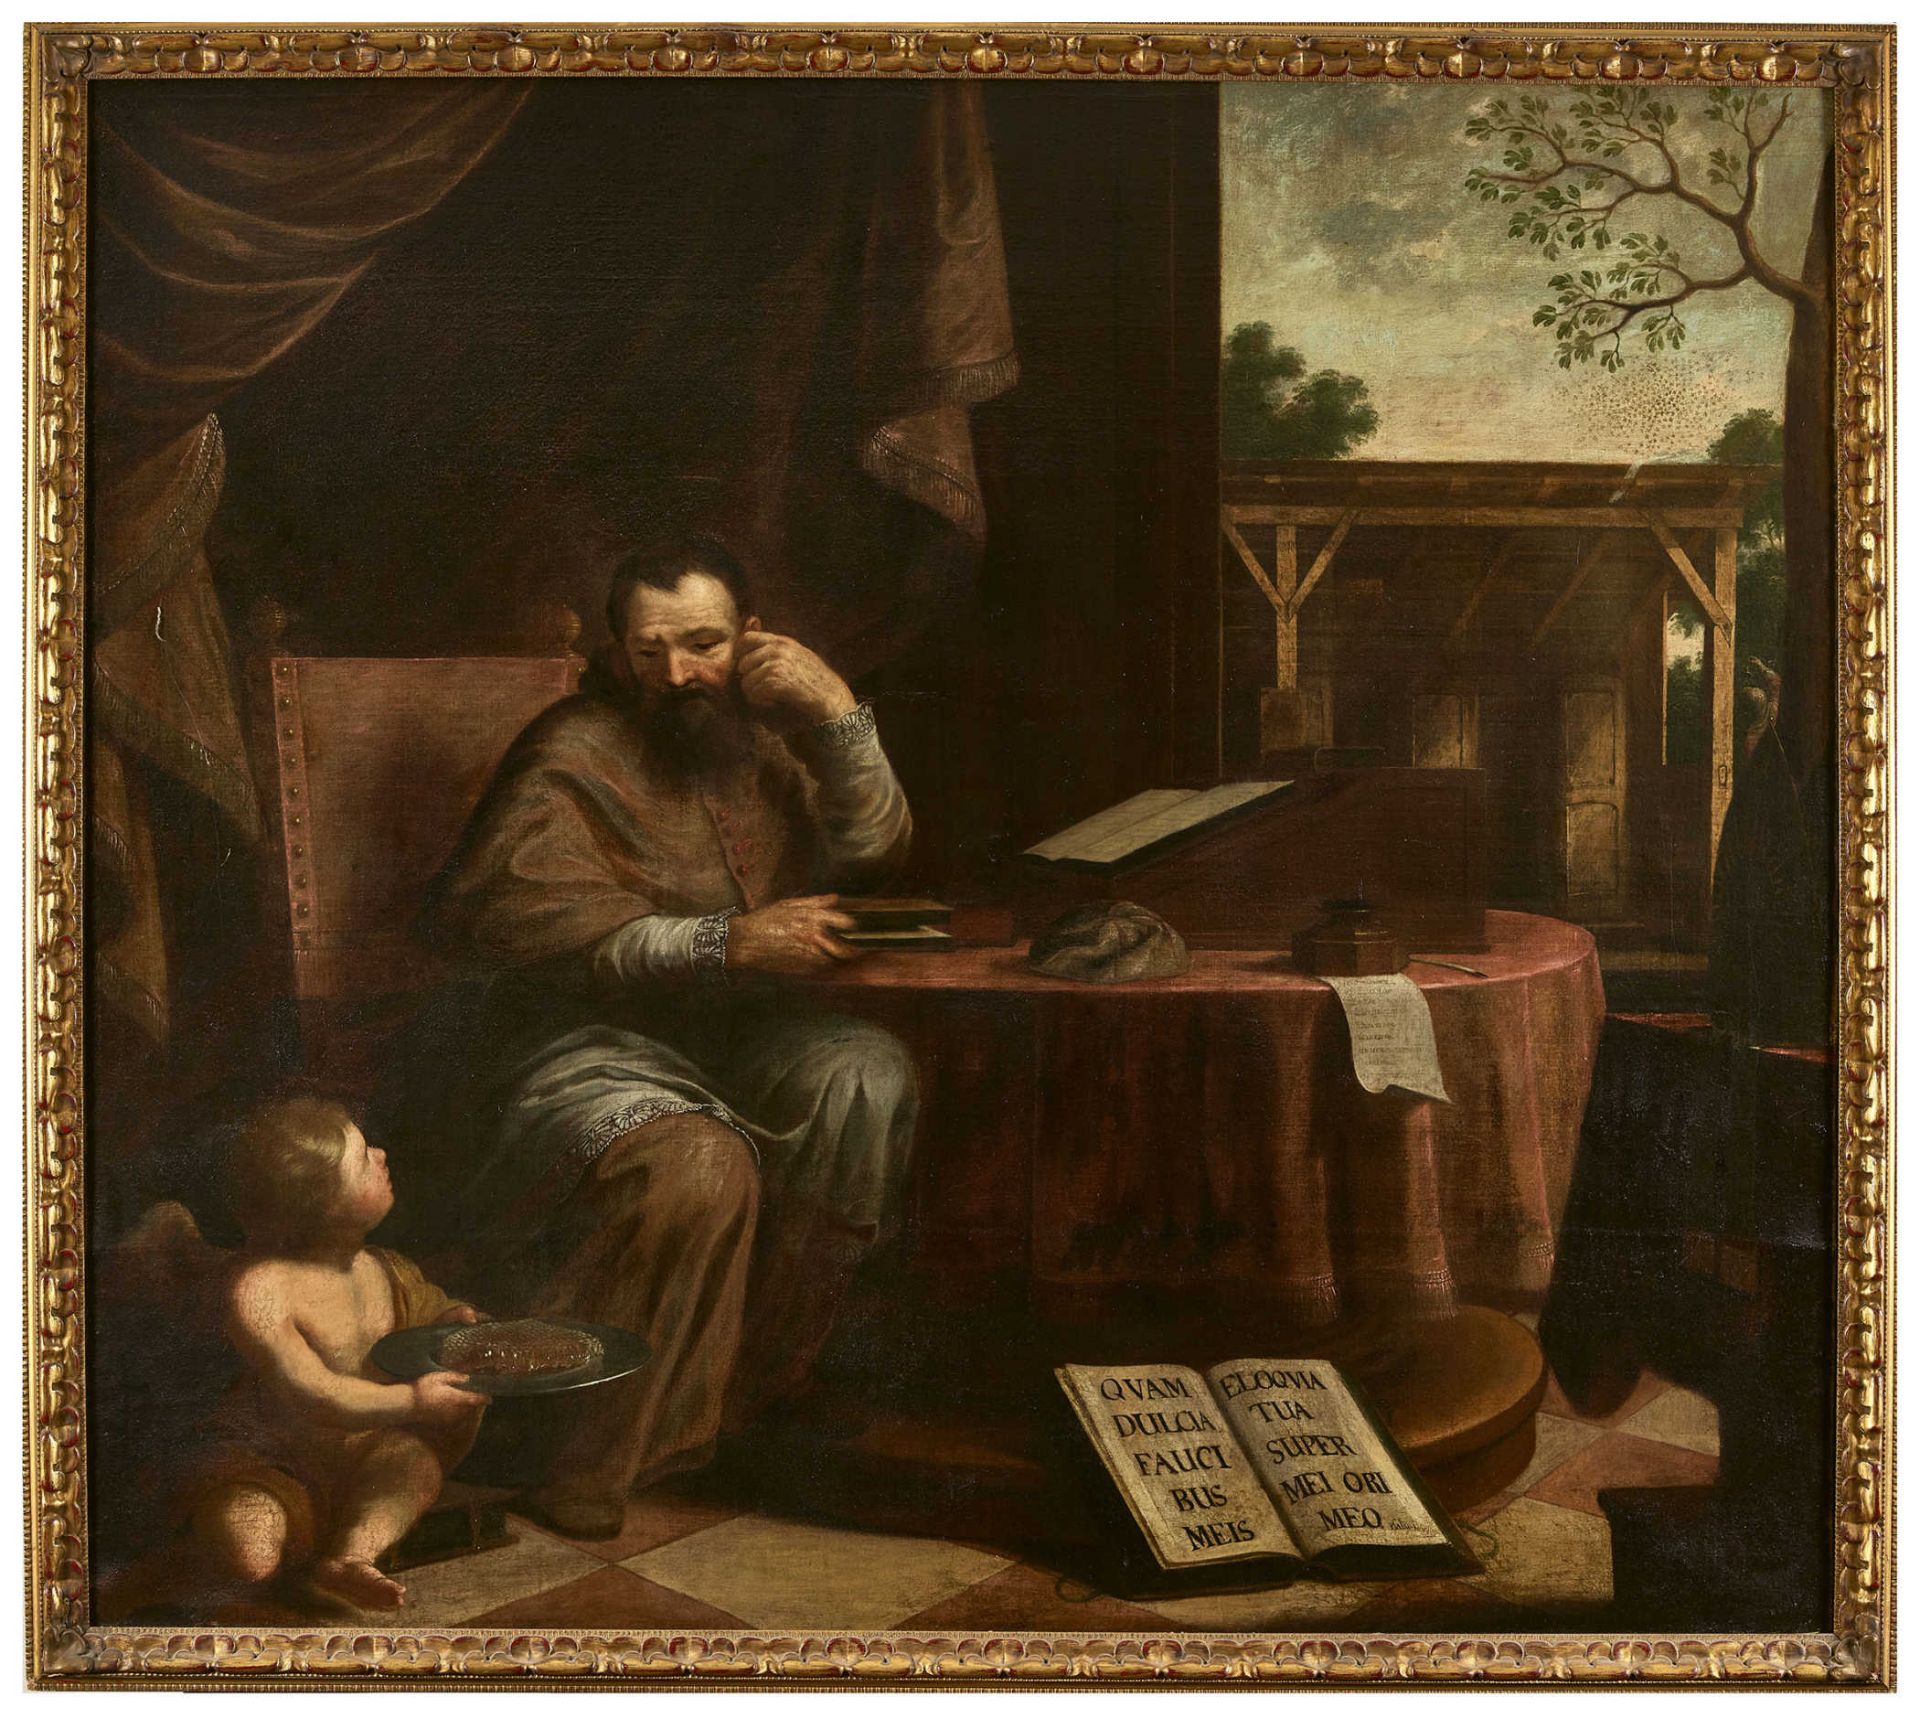 ITALIEN, 17. JH.Der Heilige Augustinus.Öl auf Leinwand, doubliert,148,5x167,5 cm- - -22.00 % buyer's - Bild 2 aus 3